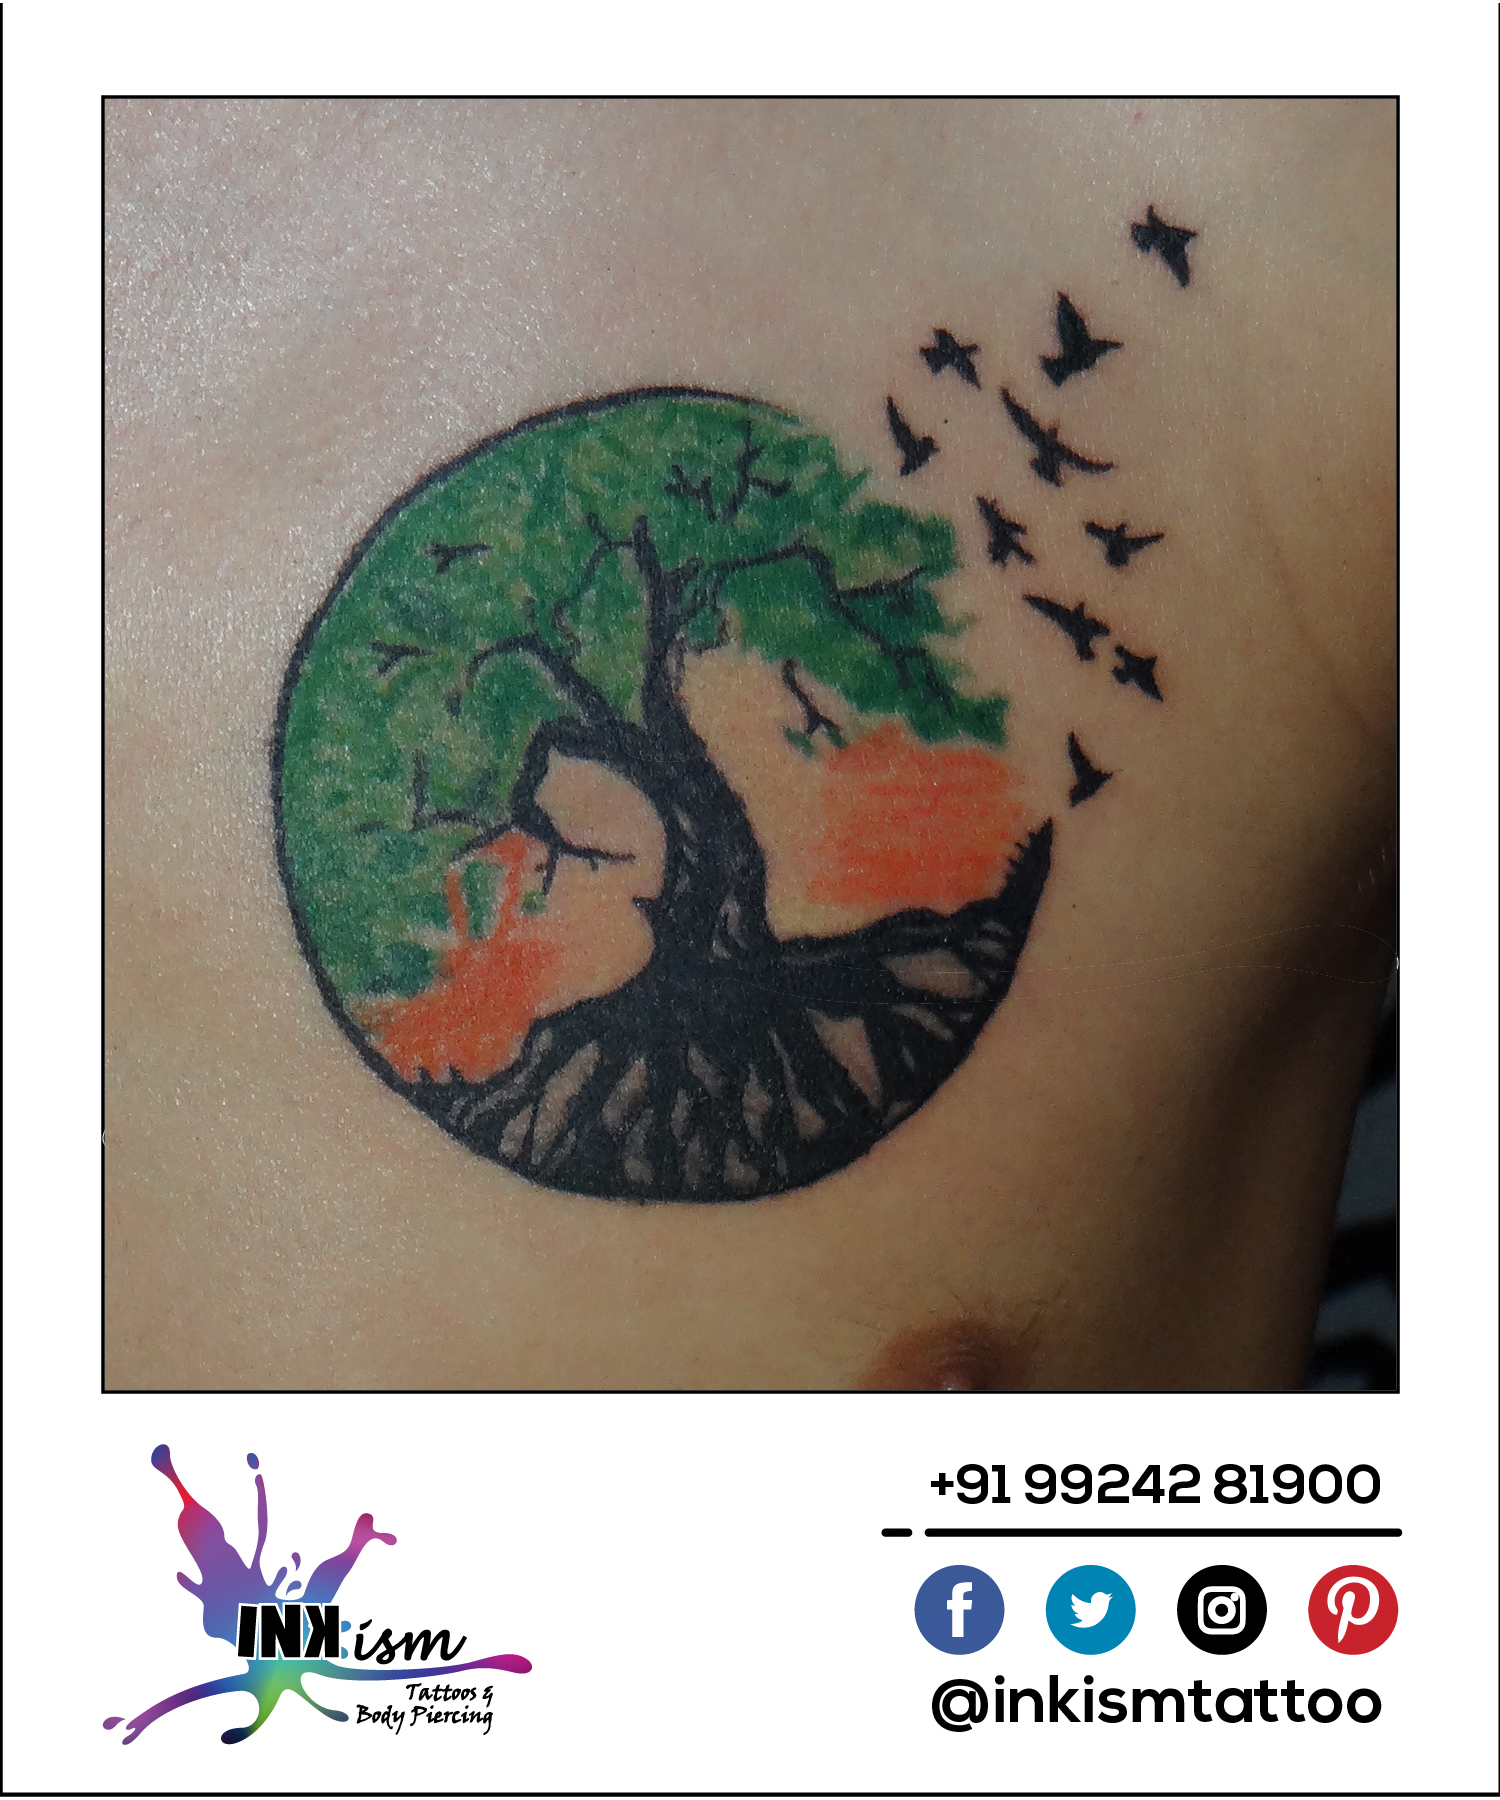 Circle of life Tattoo, Color tattoo, birds tattoo, tree tattoo, Inkism tattoo and body piercing rajkot gujarat